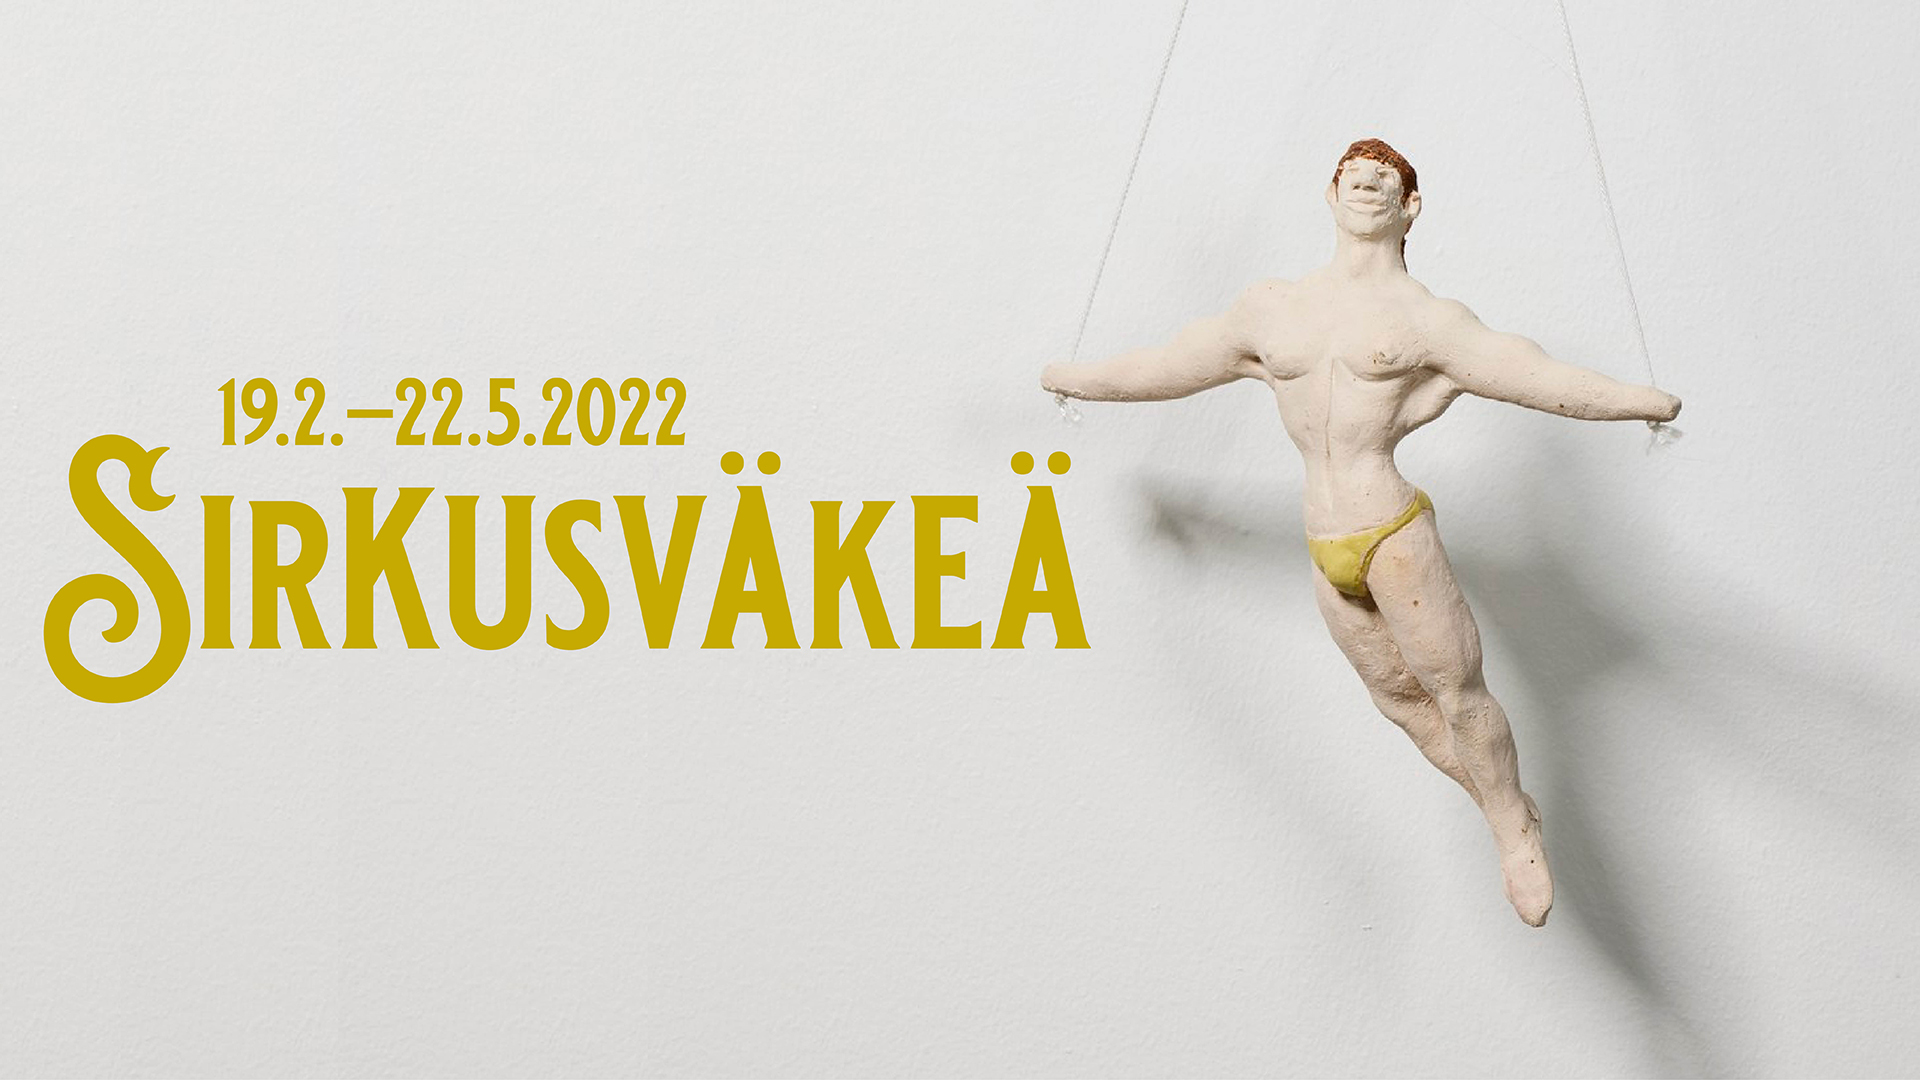 Sirkusväkeä -näyttely Kimmo Pyykkö -taidemuseossa 19.2. – 22.5.2022.